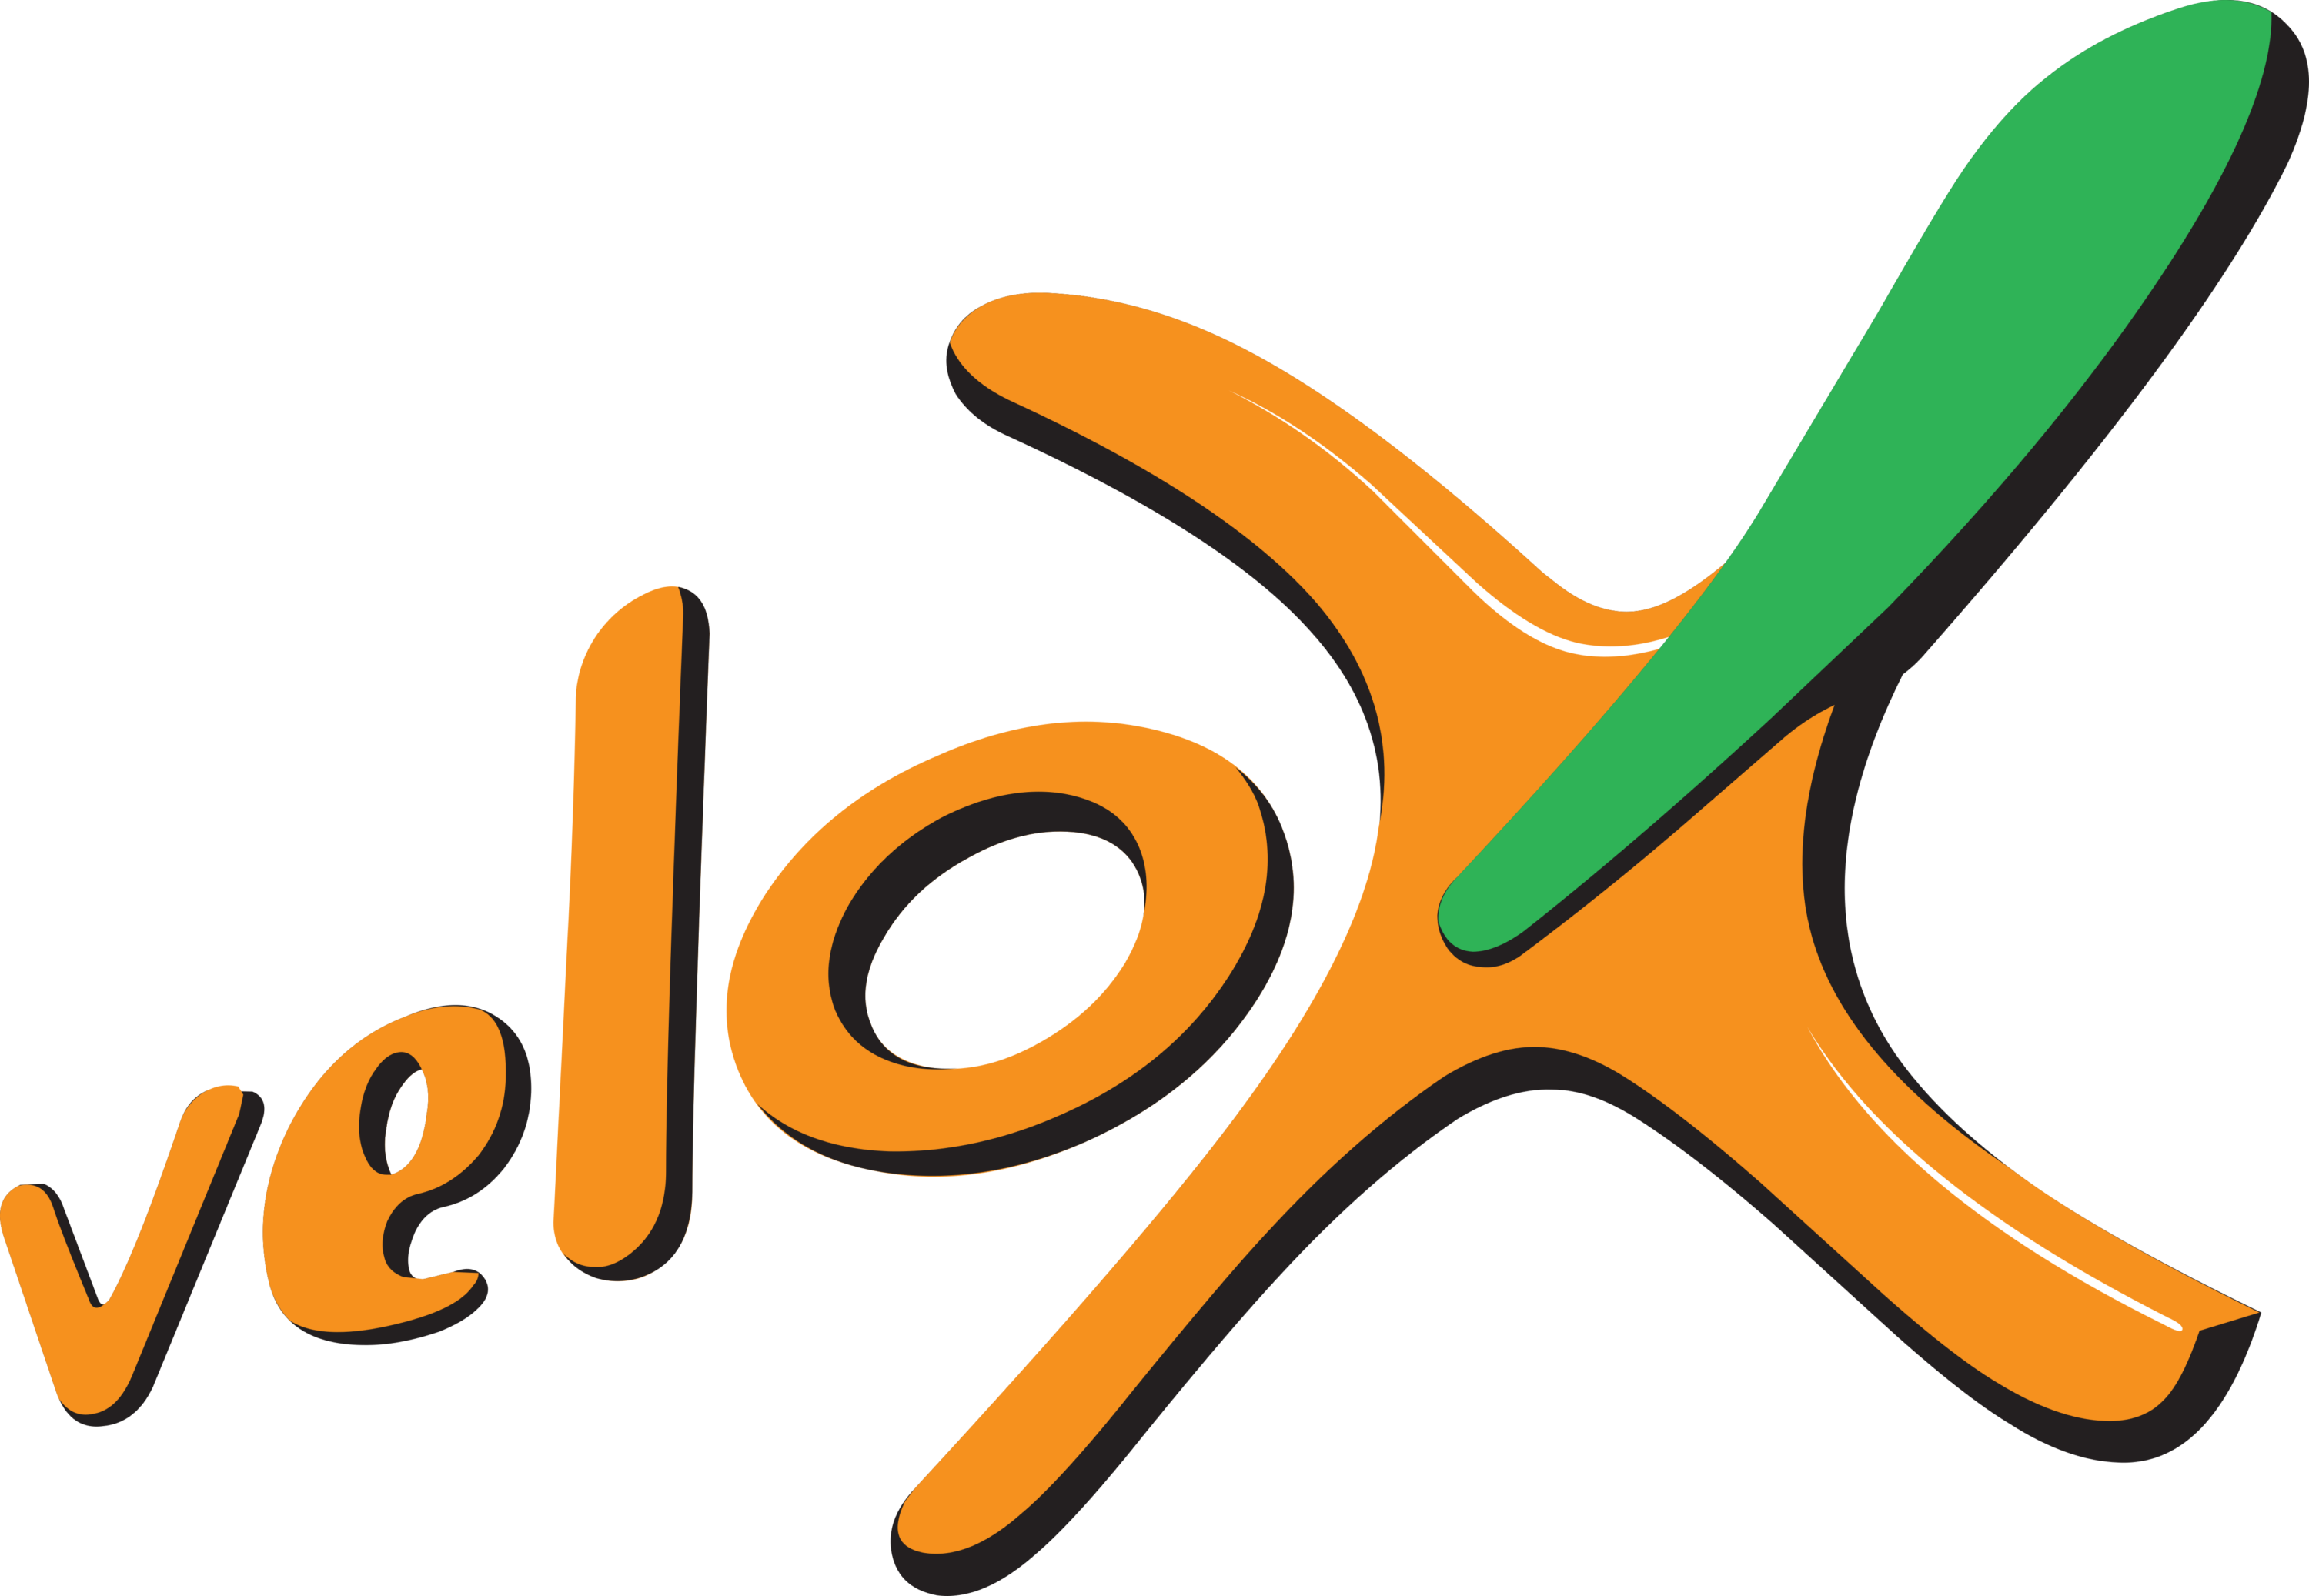 Velox Logo